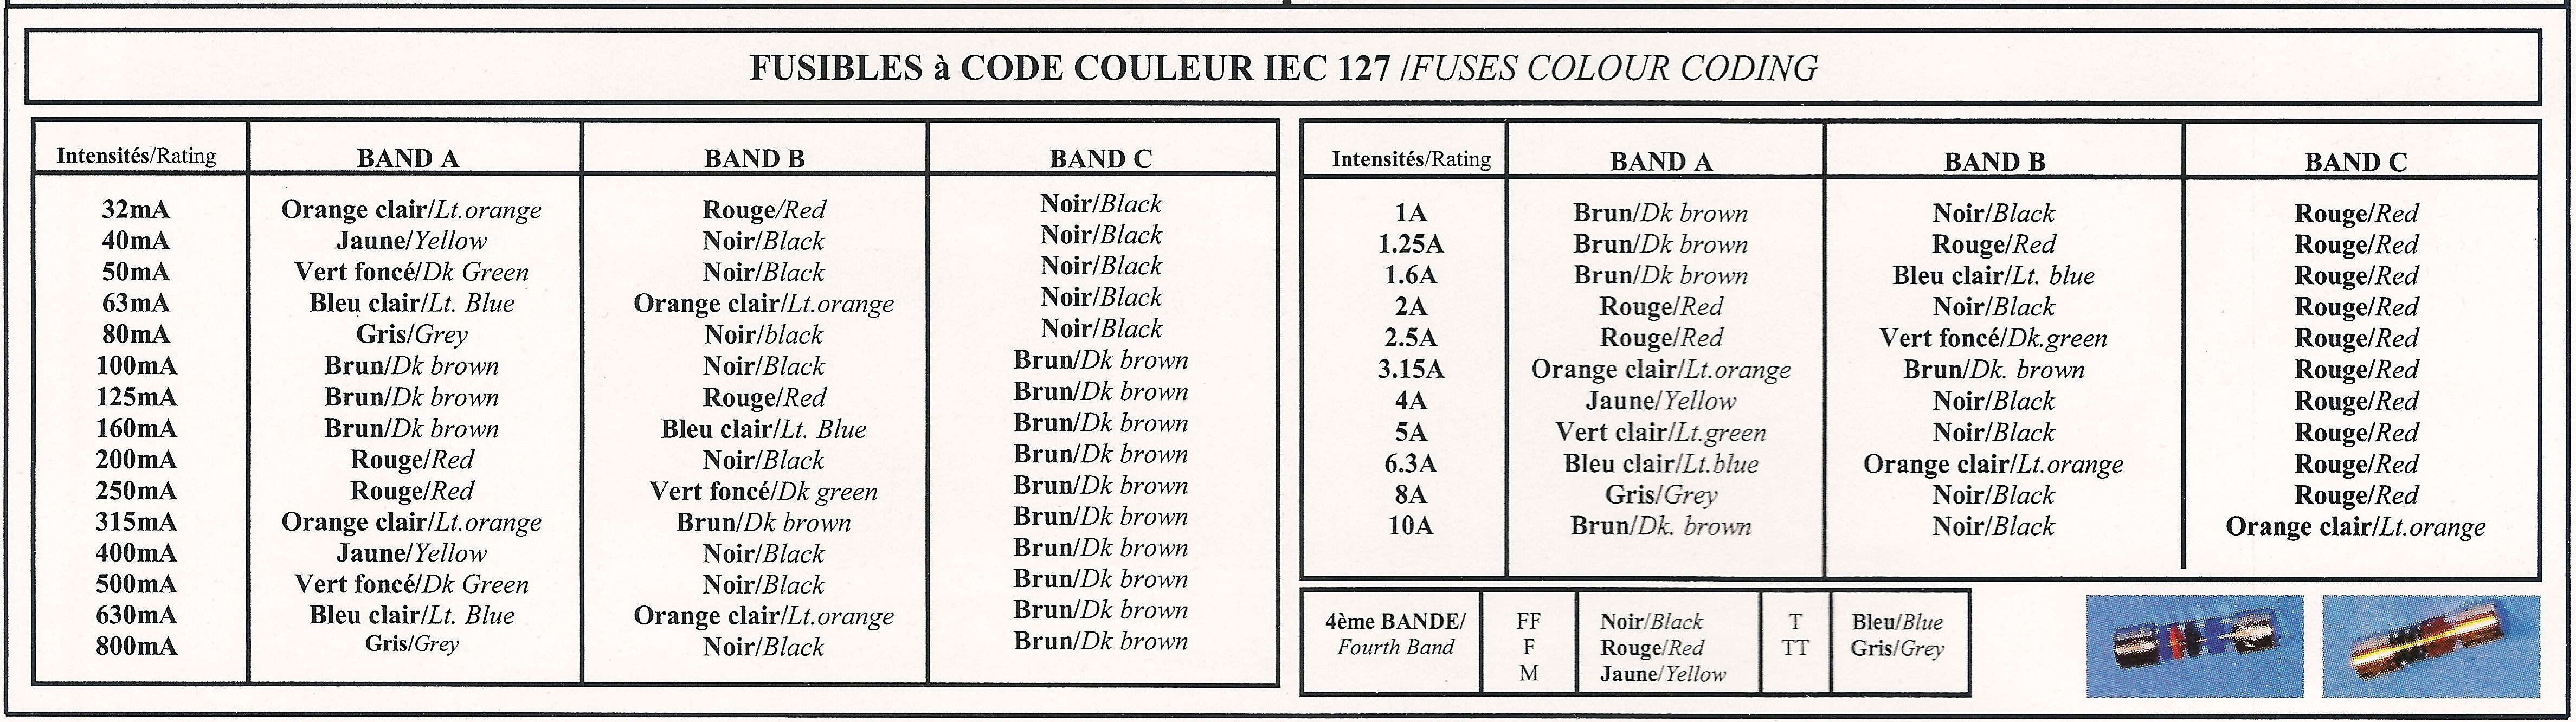 Code couleur fusibles IEC 127